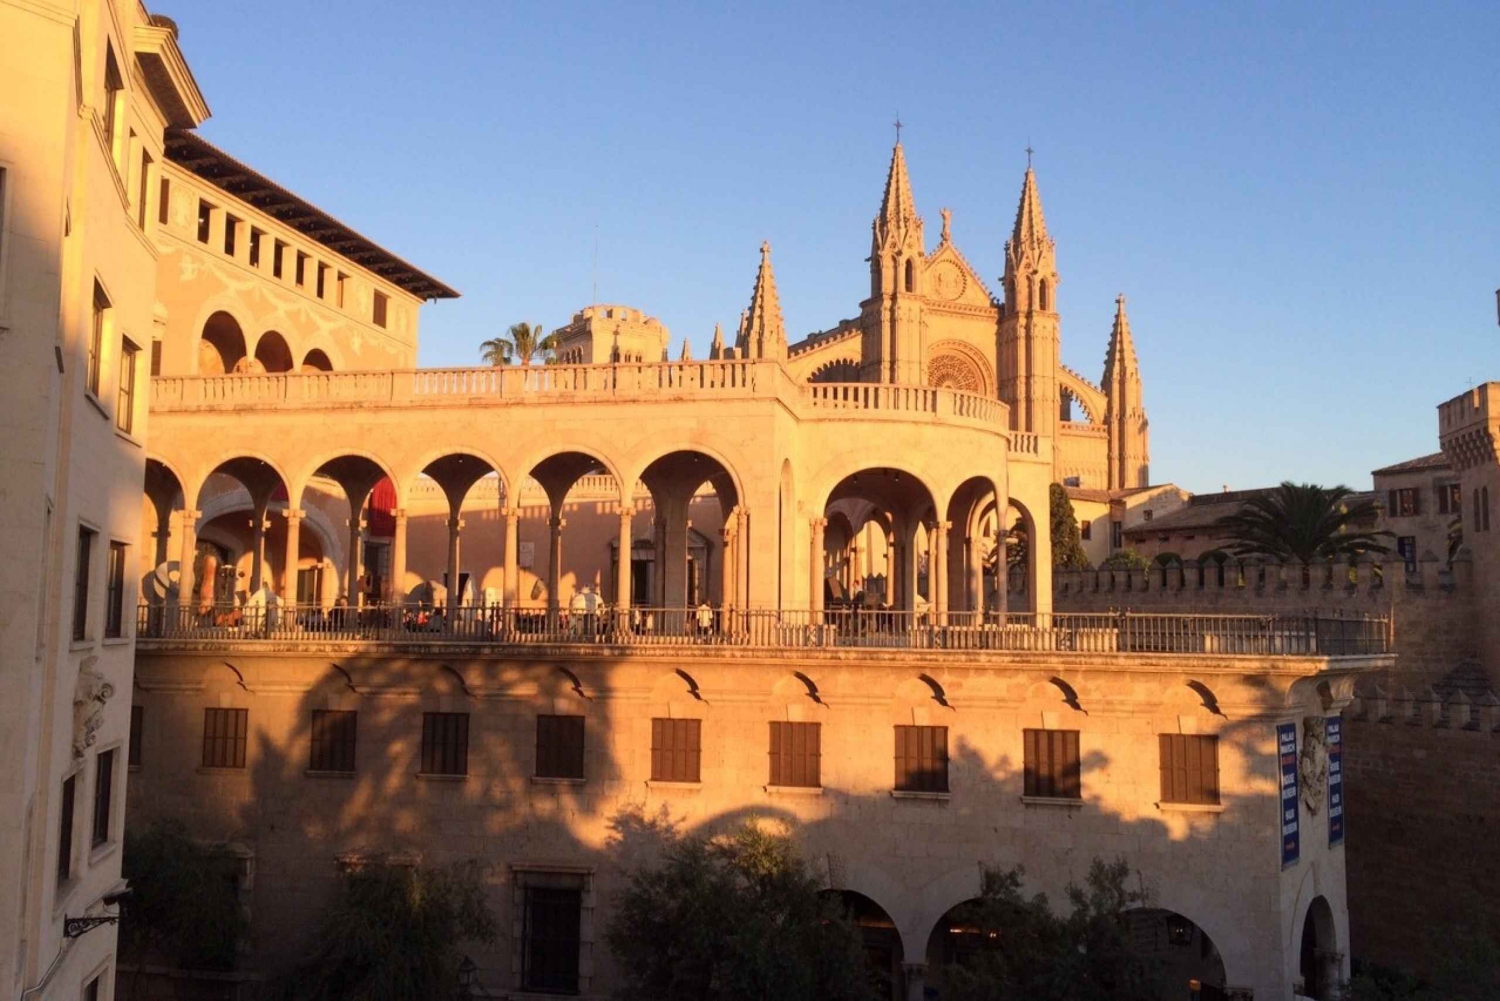 Rondleiding door de oude stad van Palma met bezoek aan de kathedraal